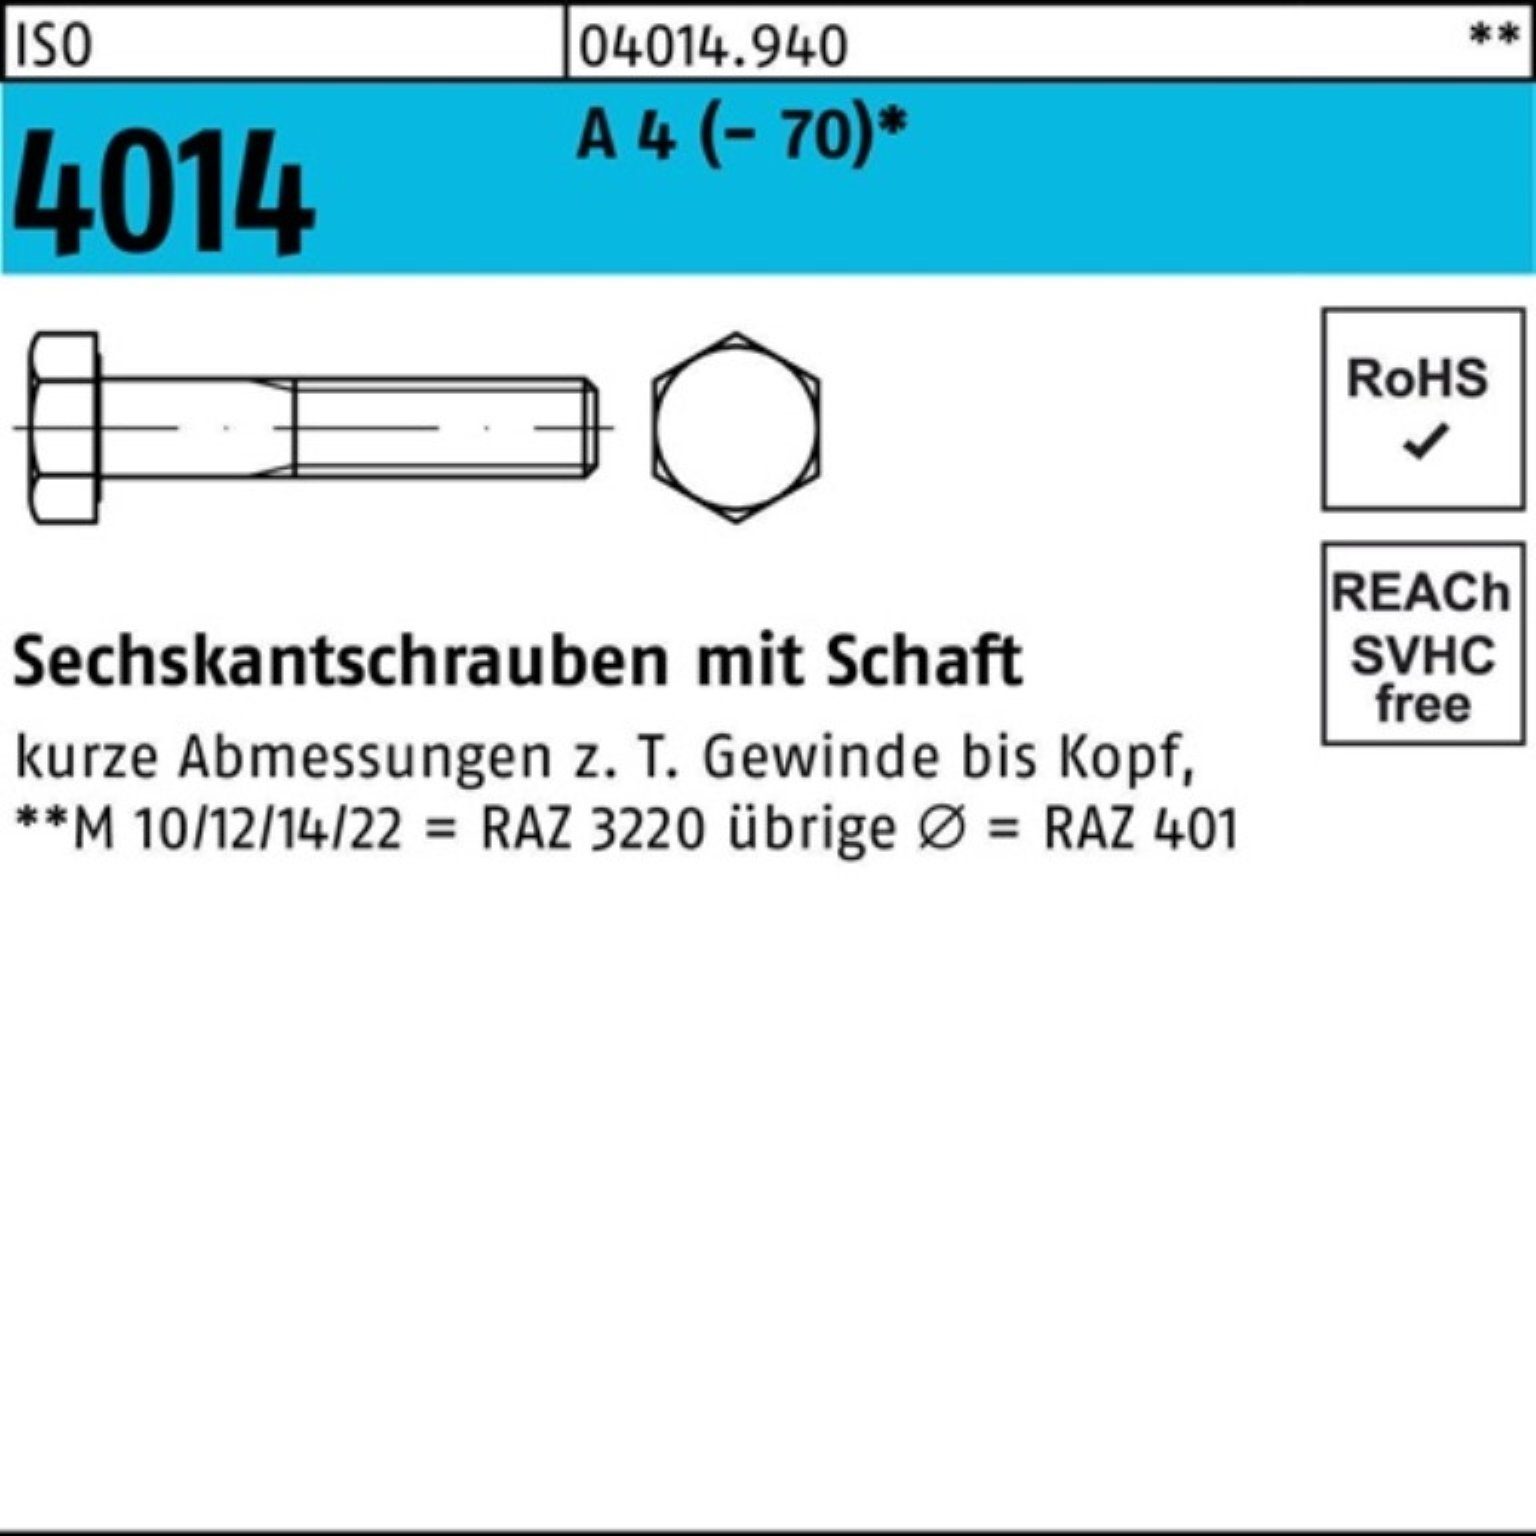 Bufab Sechskantschraube 100er Pack Sechskantschraube ISO 4014 Schaft M8x 40 A 4 (70) 100 St